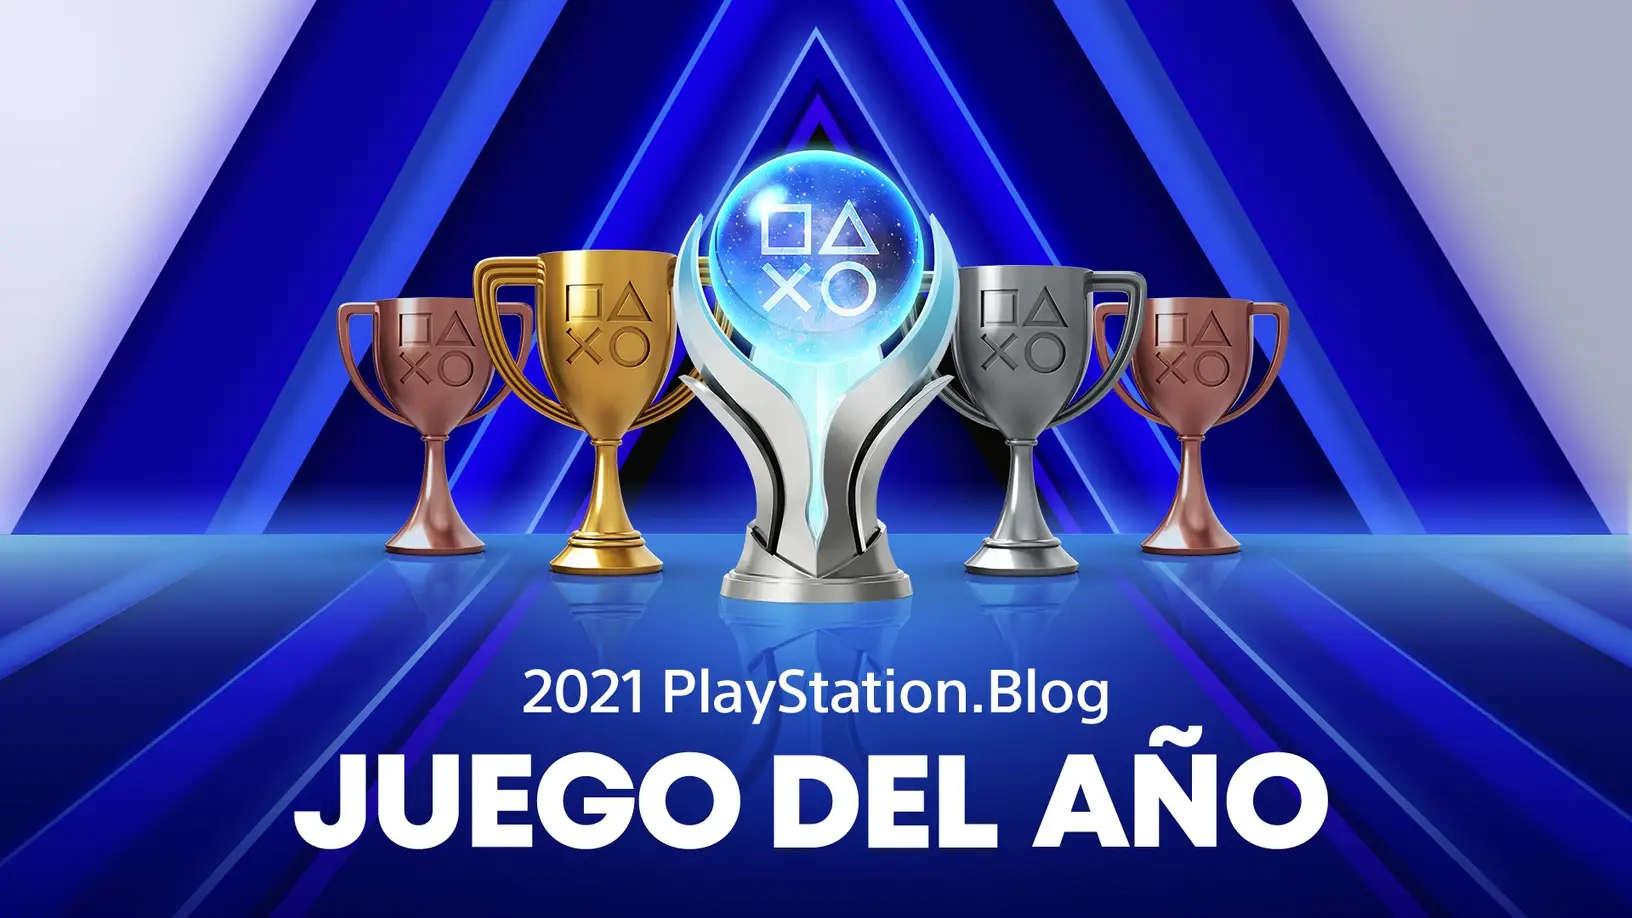 El blog oficial de PlayStation entregó sus premios a los mejores juegos de 2021